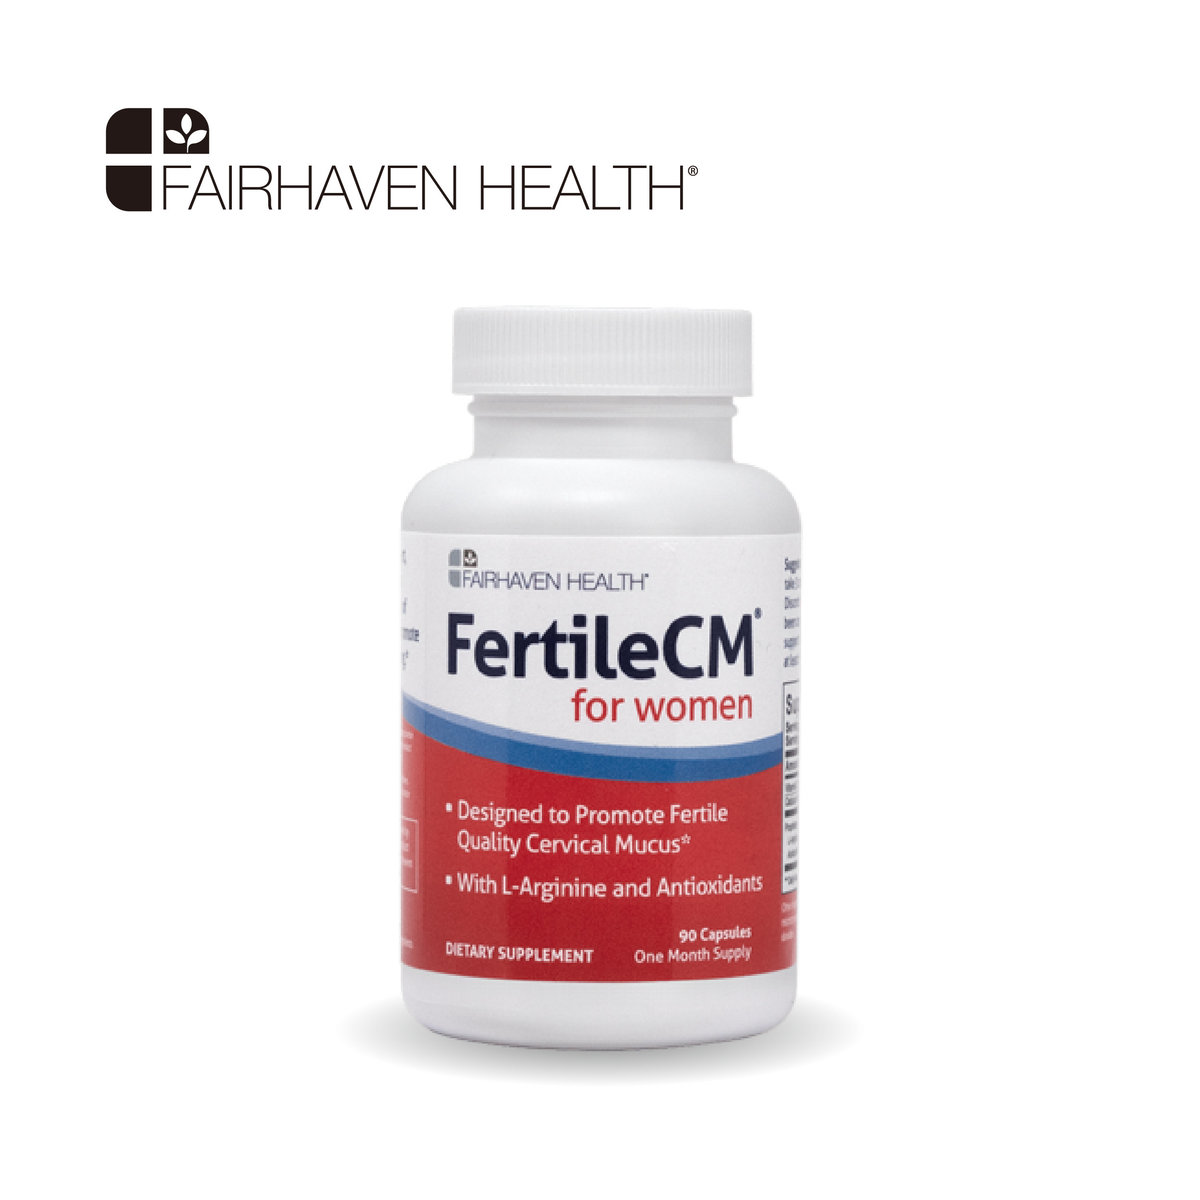 Hình ảnh Fairhaven Health Fertilecm for women Sản phẩm tăng độ dày niêm mạc tử cung